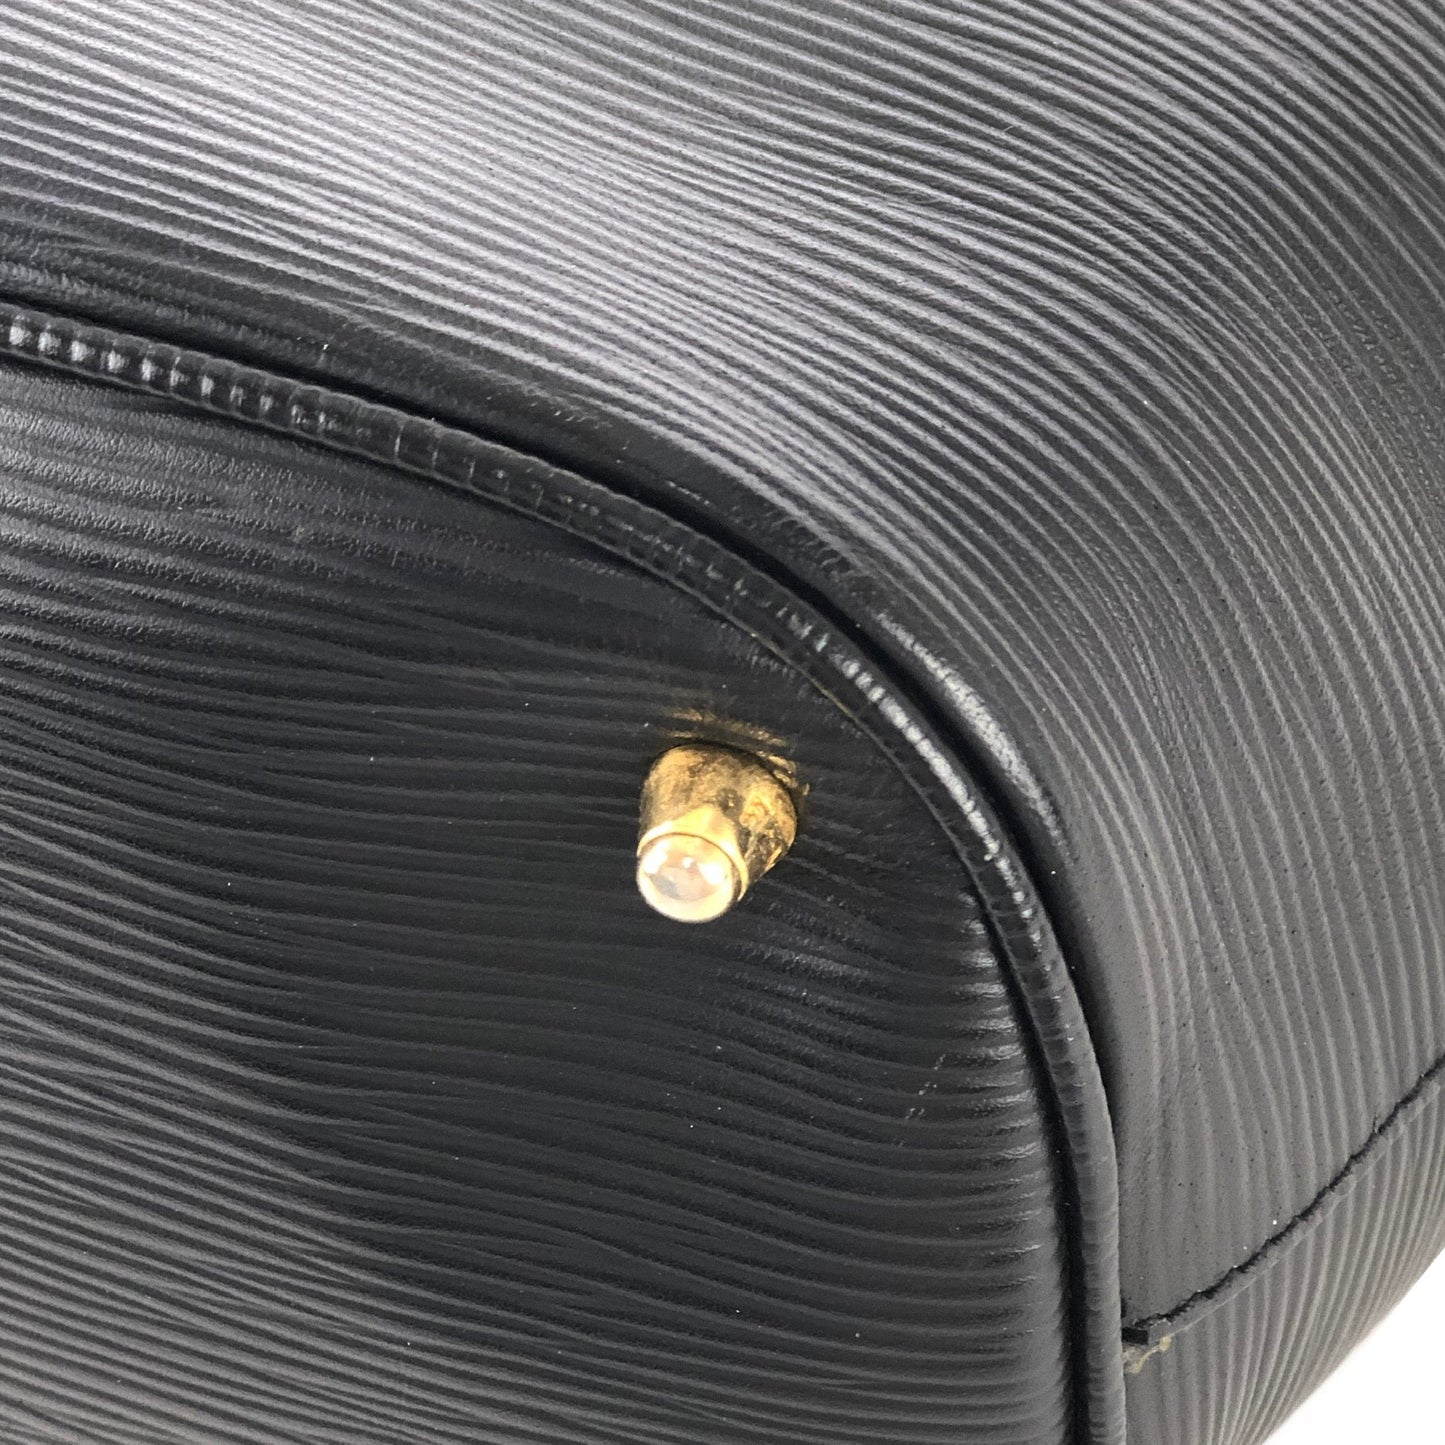 FENDI FF logo Embossed leather Drawstring Backpack Black Vintage Old 82m65h